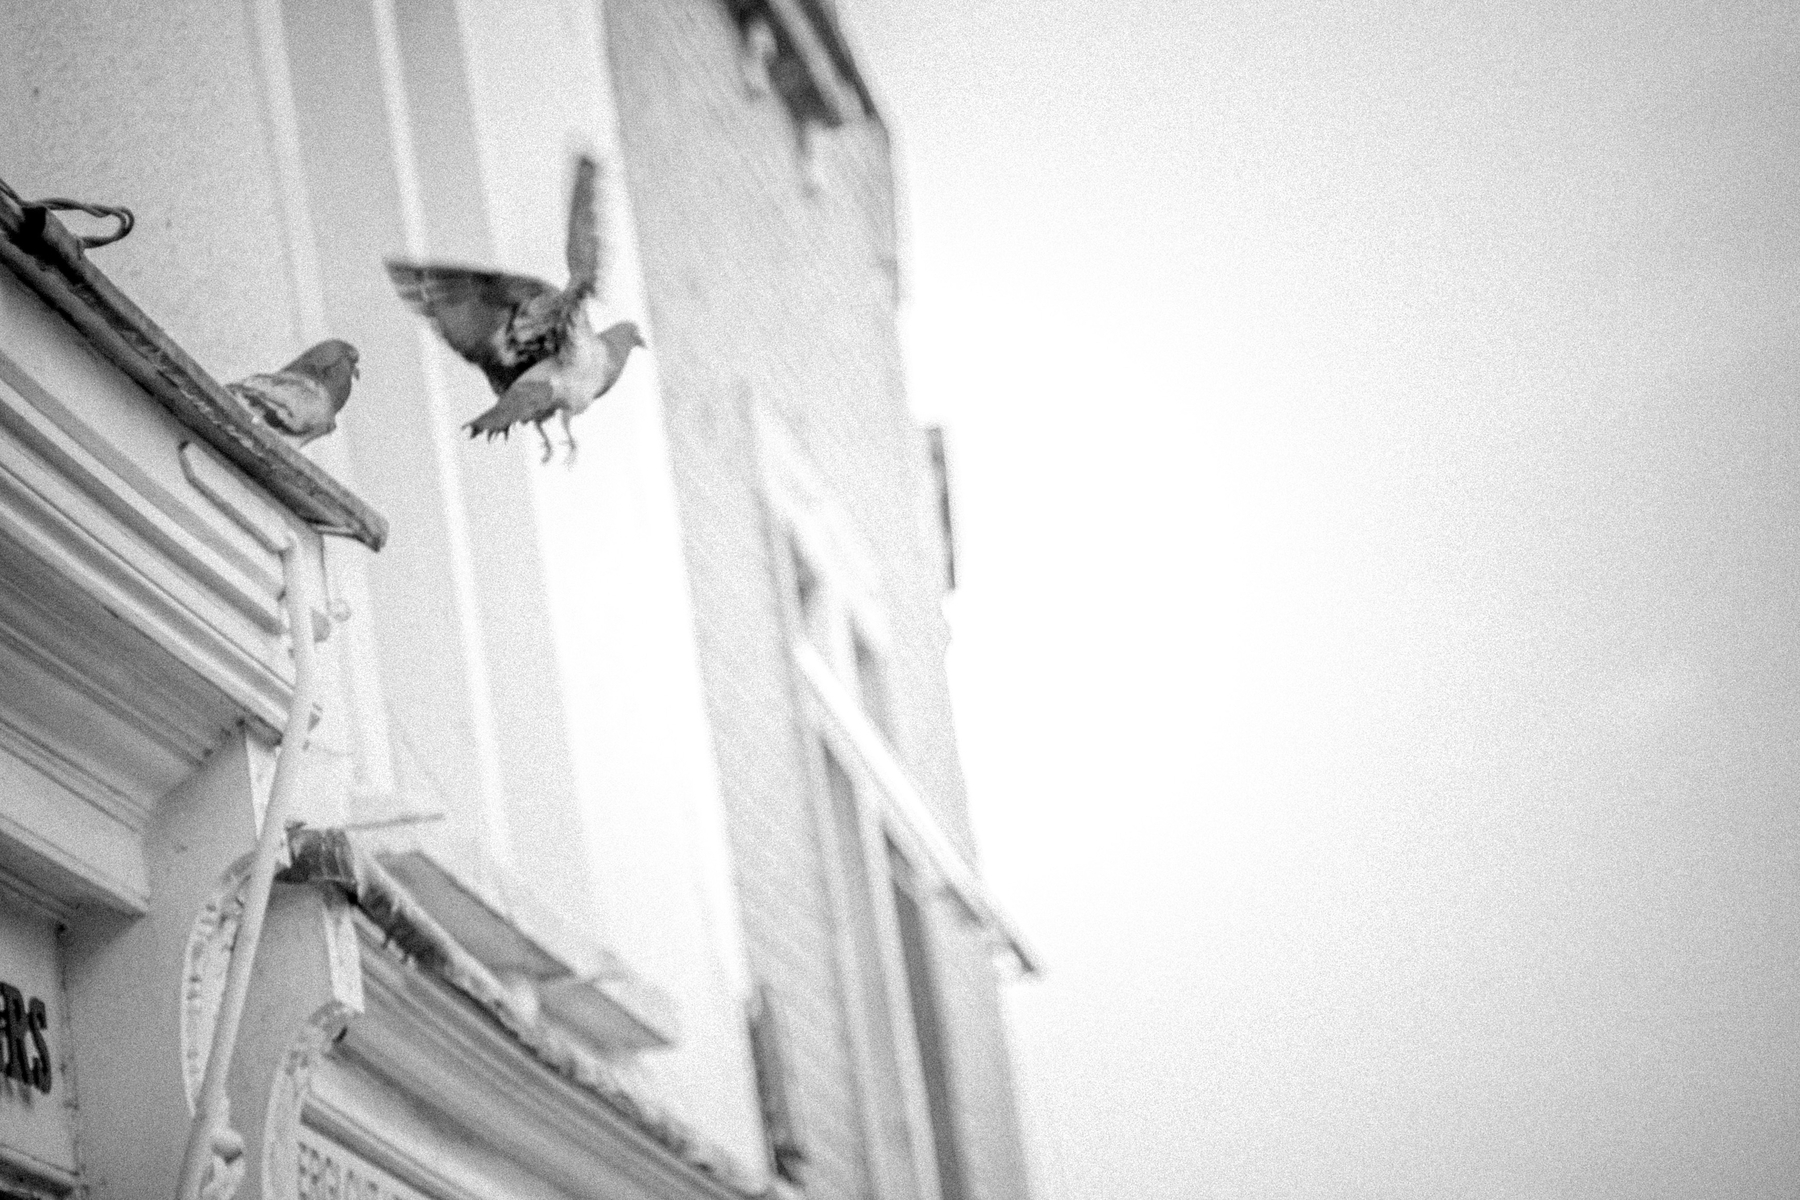 A pigeon flies off a windowsill